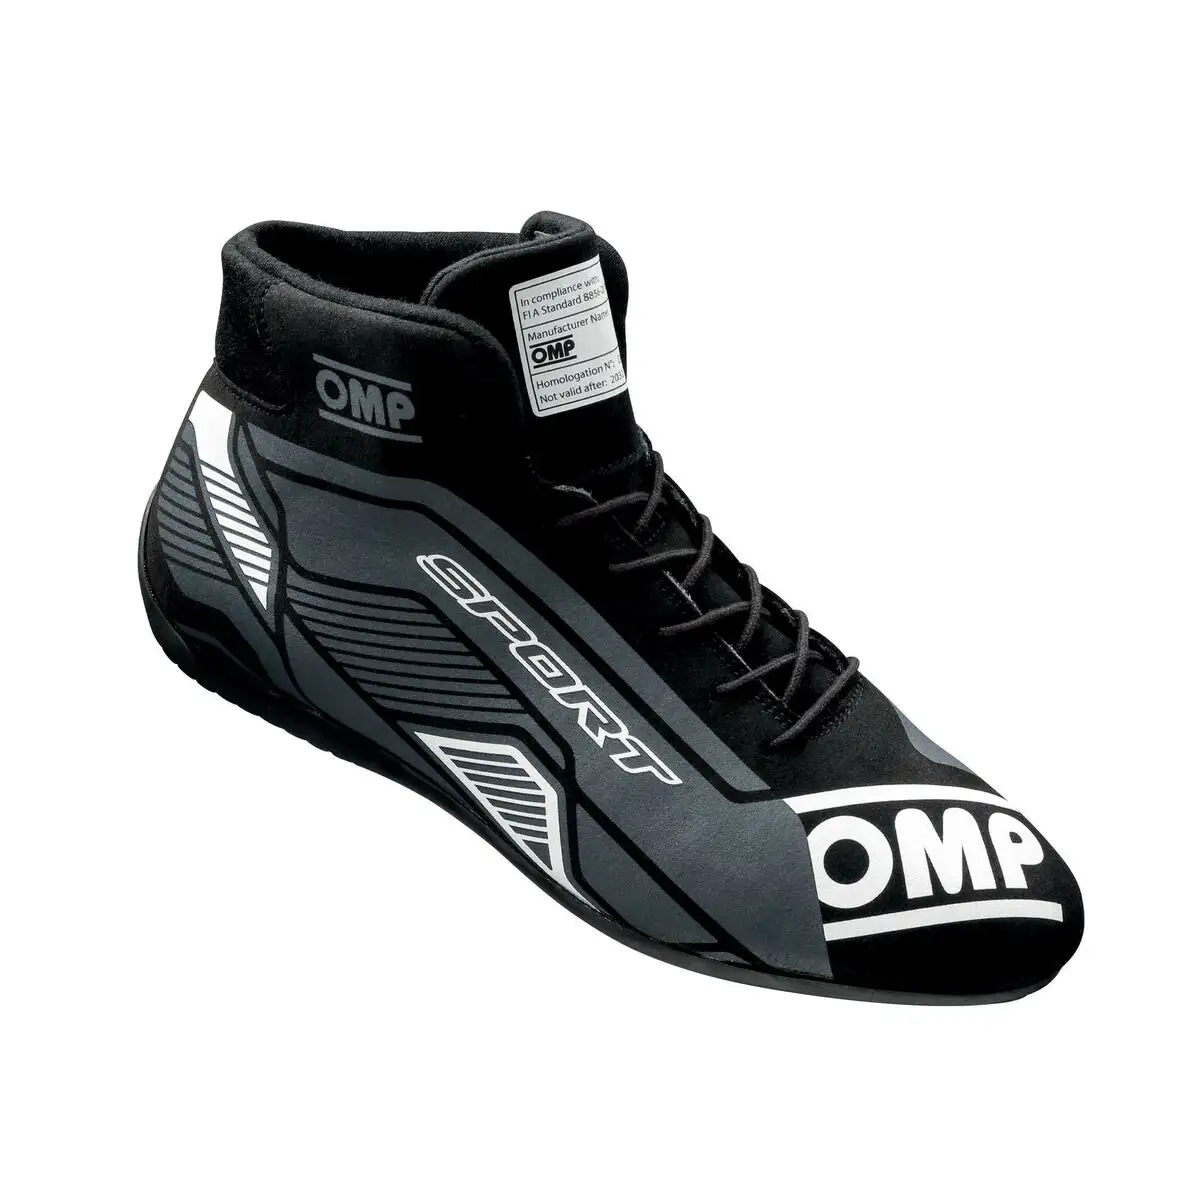 Chaussures de course omp sport noir gris 46_6337. DIAYTAR SENEGAL - Là où Chaque Achat a du Sens. Explorez notre gamme et choisissez des produits qui racontent une histoire, votre histoire.